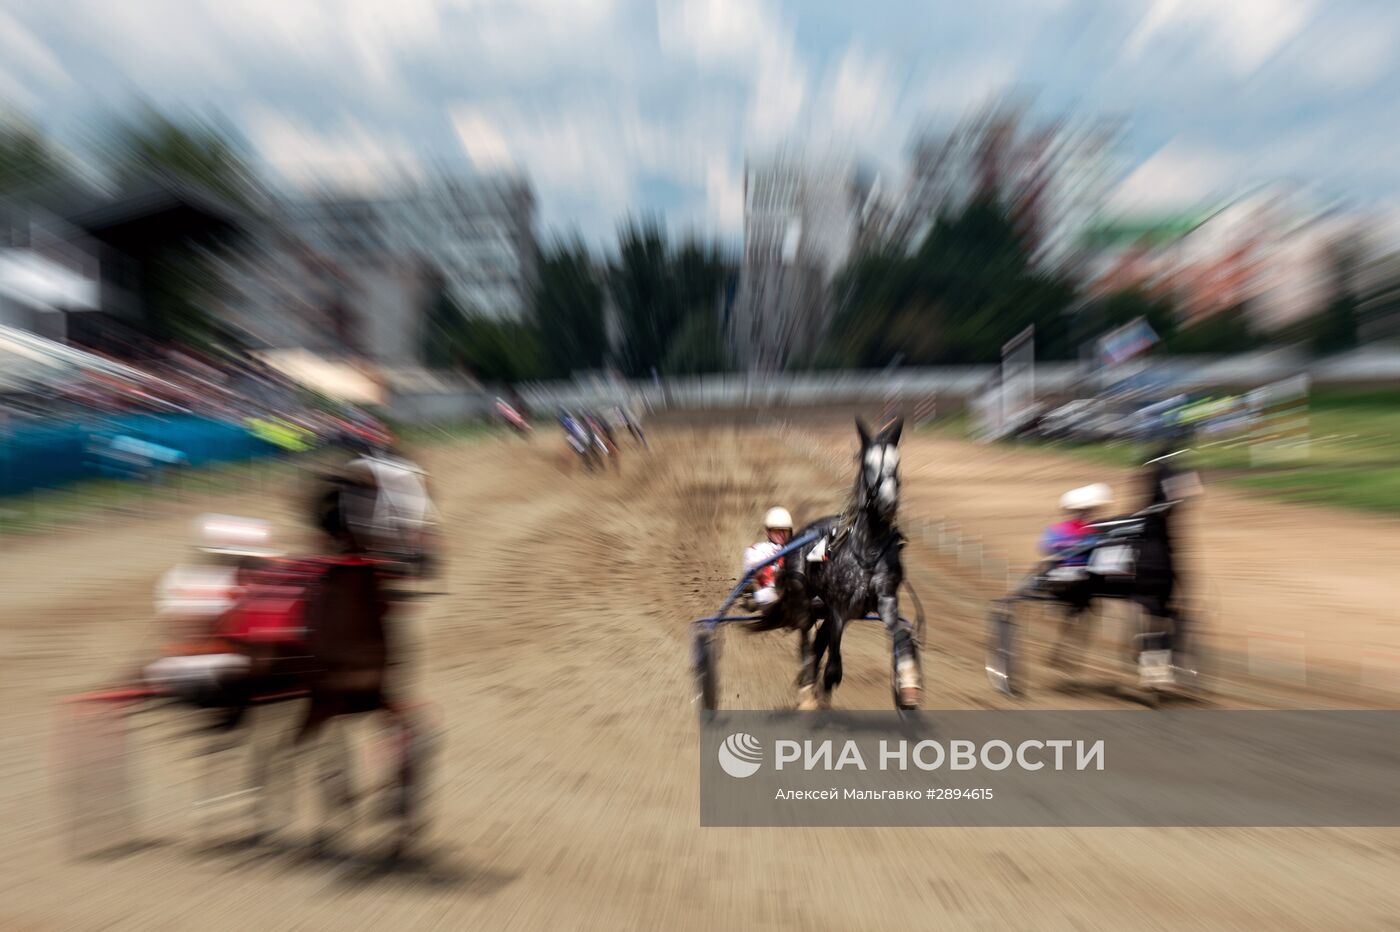 Конно-спортивные соревнования "Большой Сибирский круг" в Омске